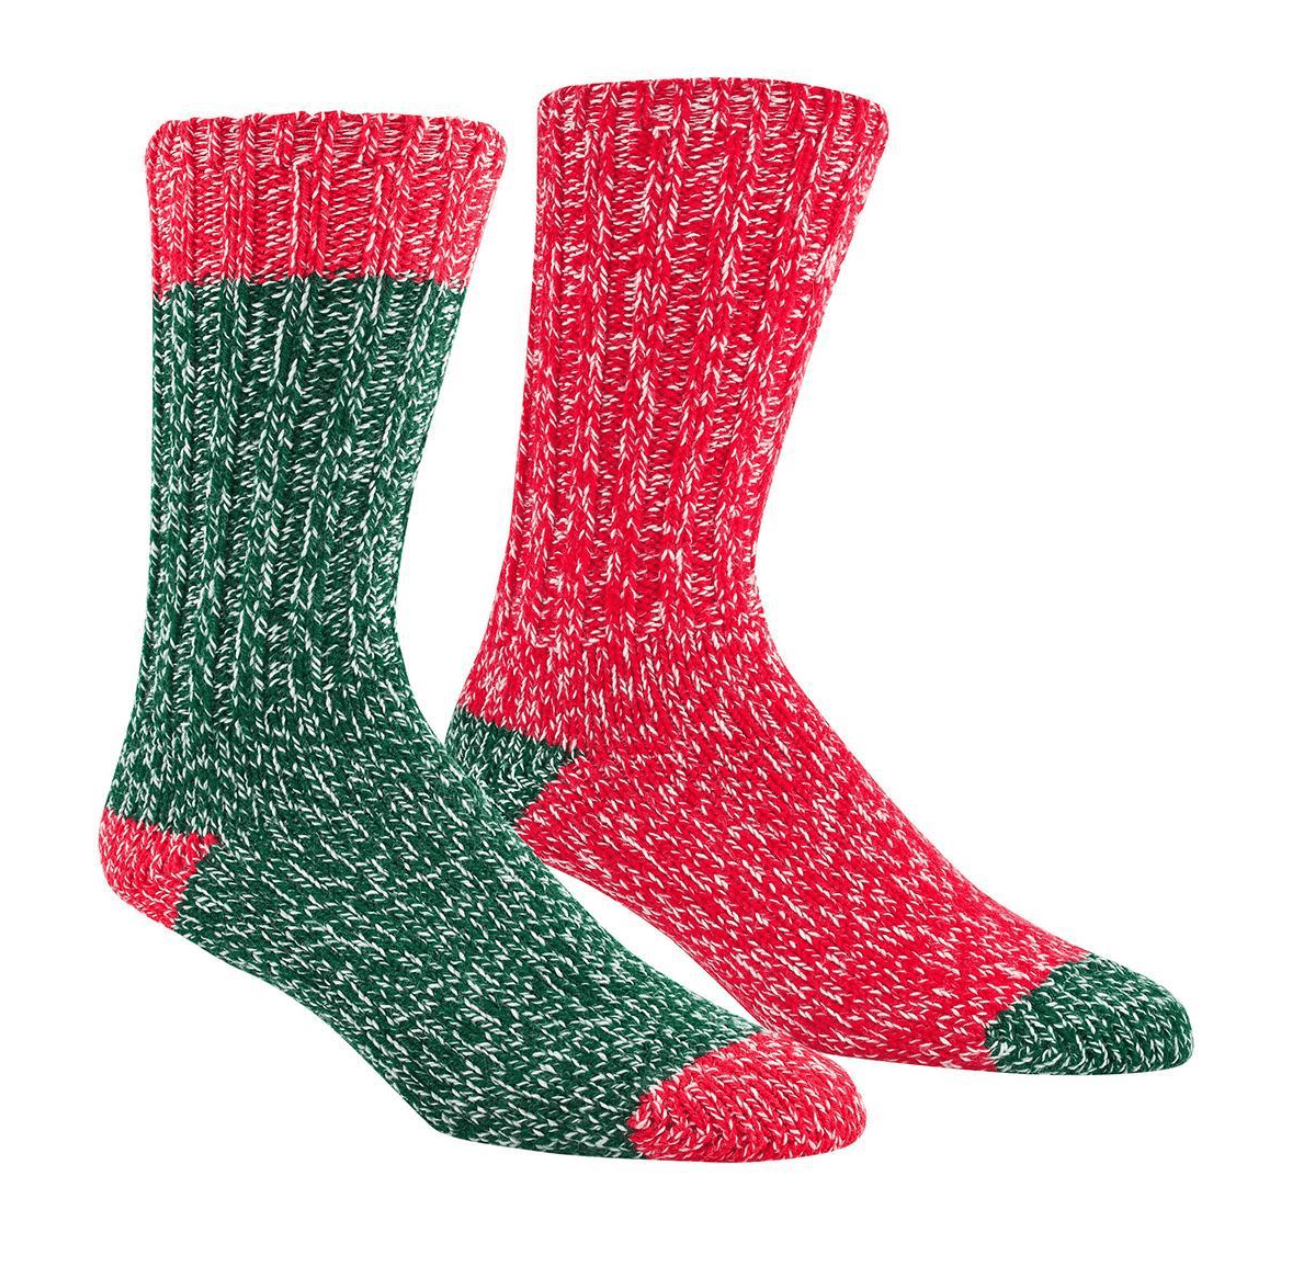 best christmas socks manufacturer near me,christmas socks, christmas socks manufacturer